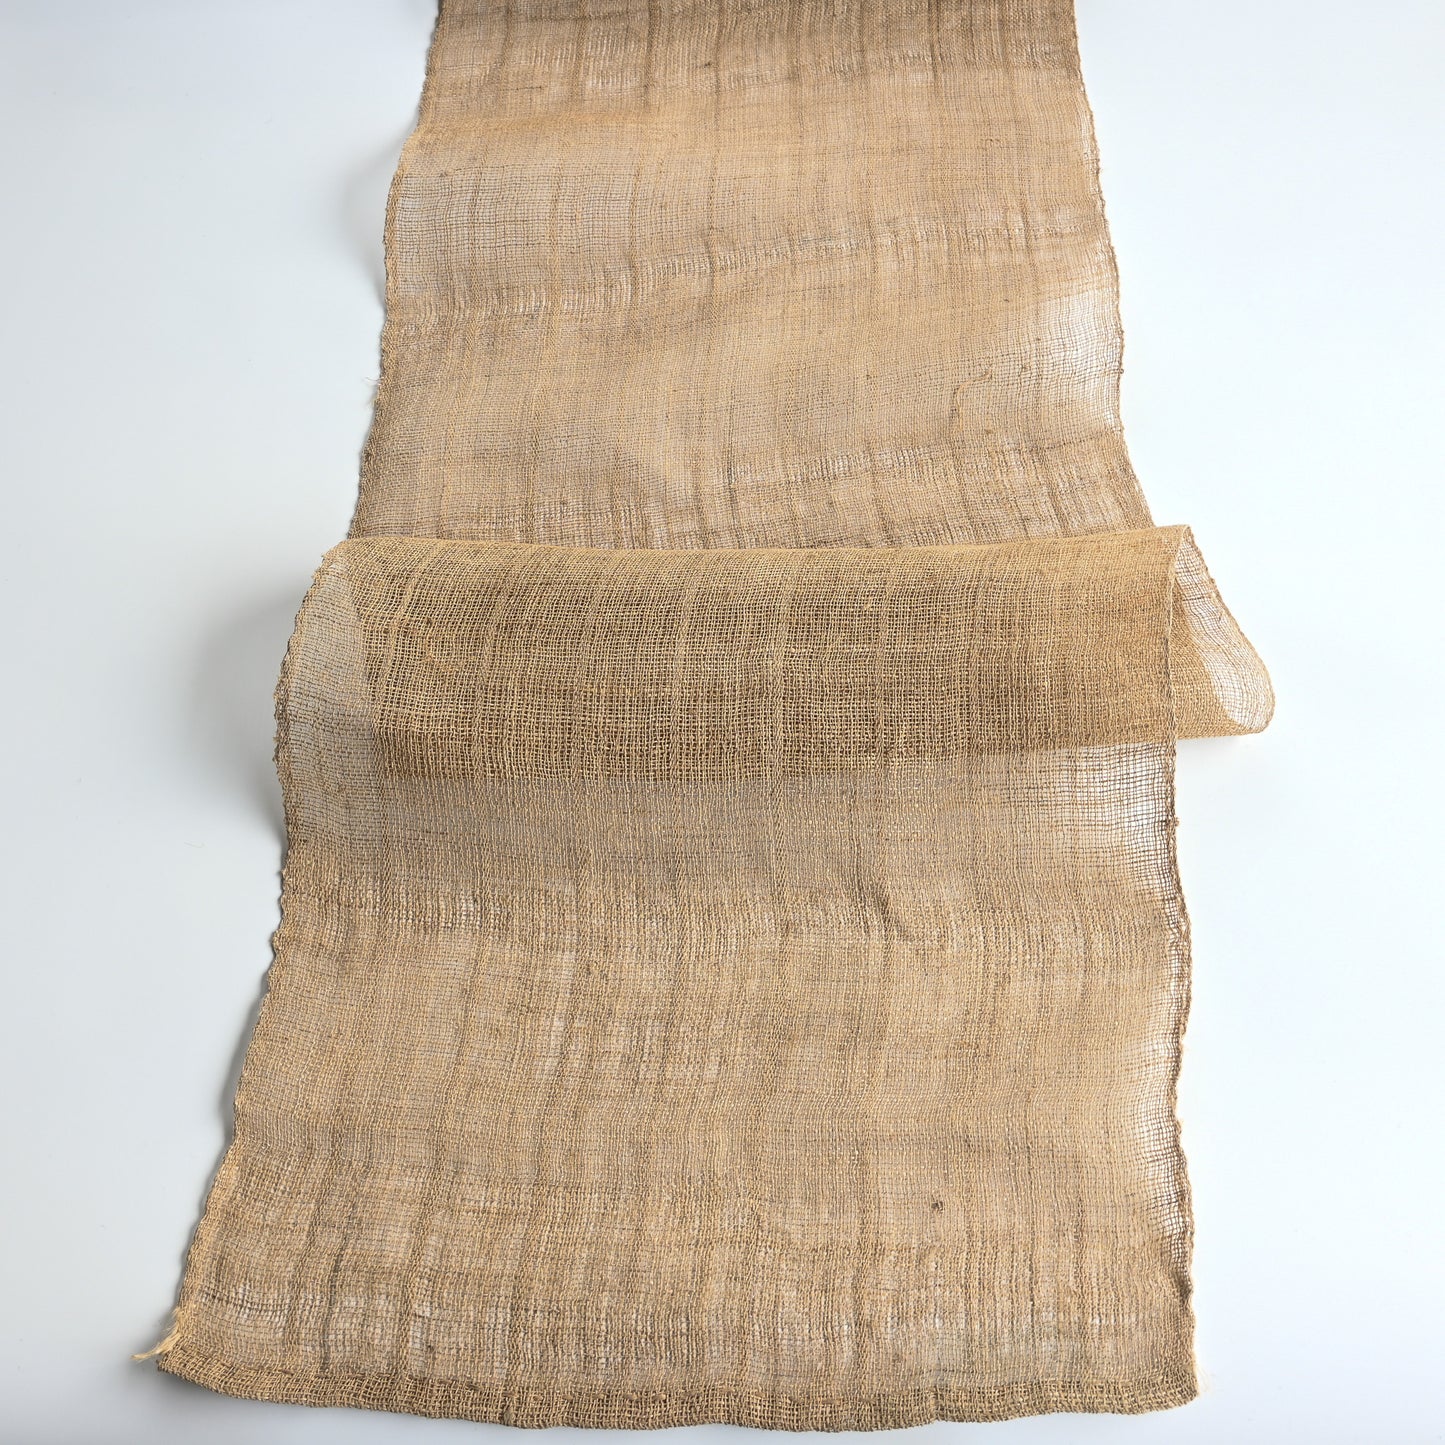 Antique Natural Hemp Kaya Fabric